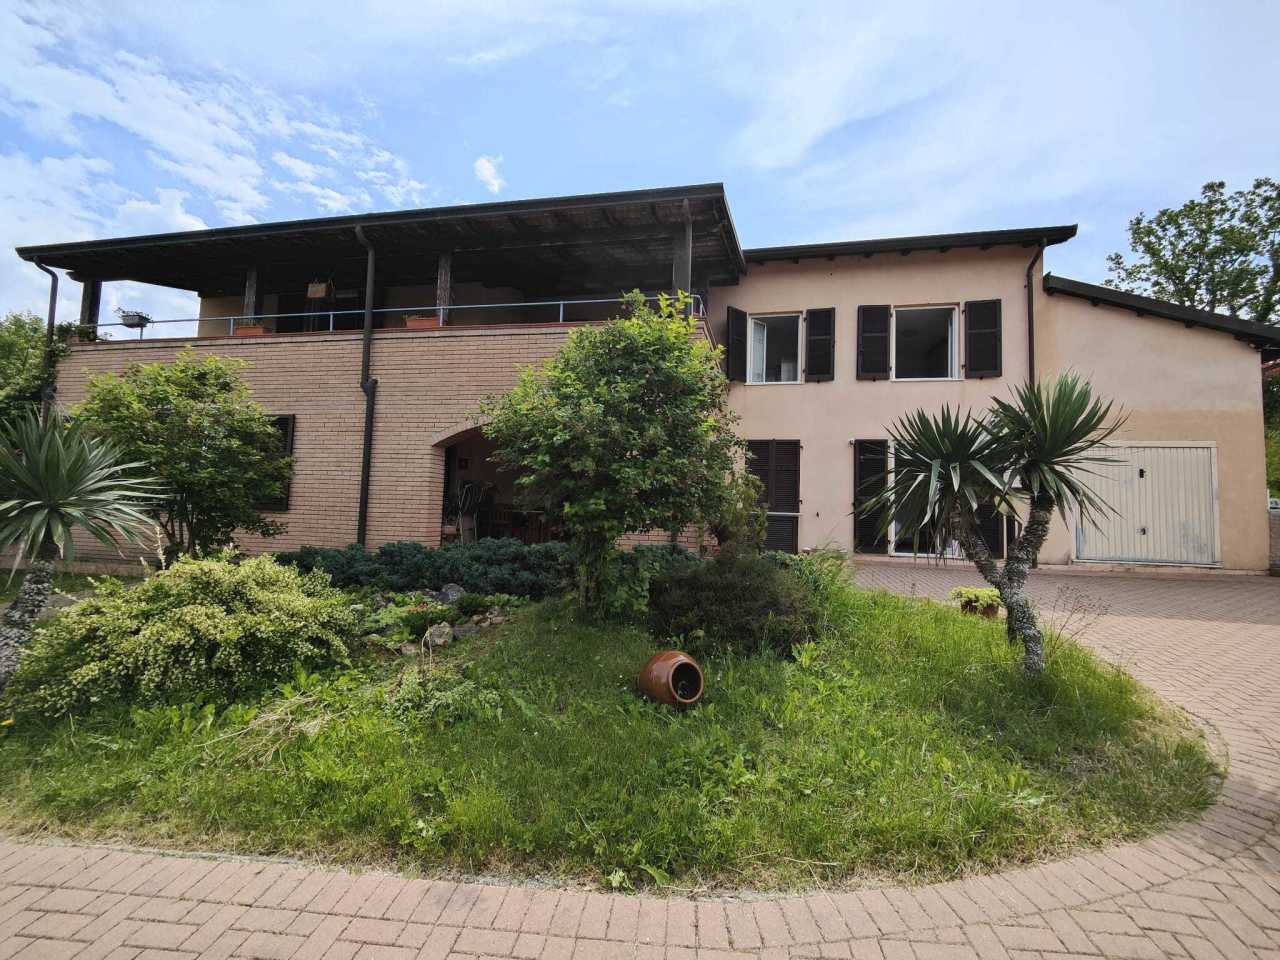 Villa in vendita a Aulla, 8 locali, prezzo € 350.000 | PortaleAgenzieImmobiliari.it